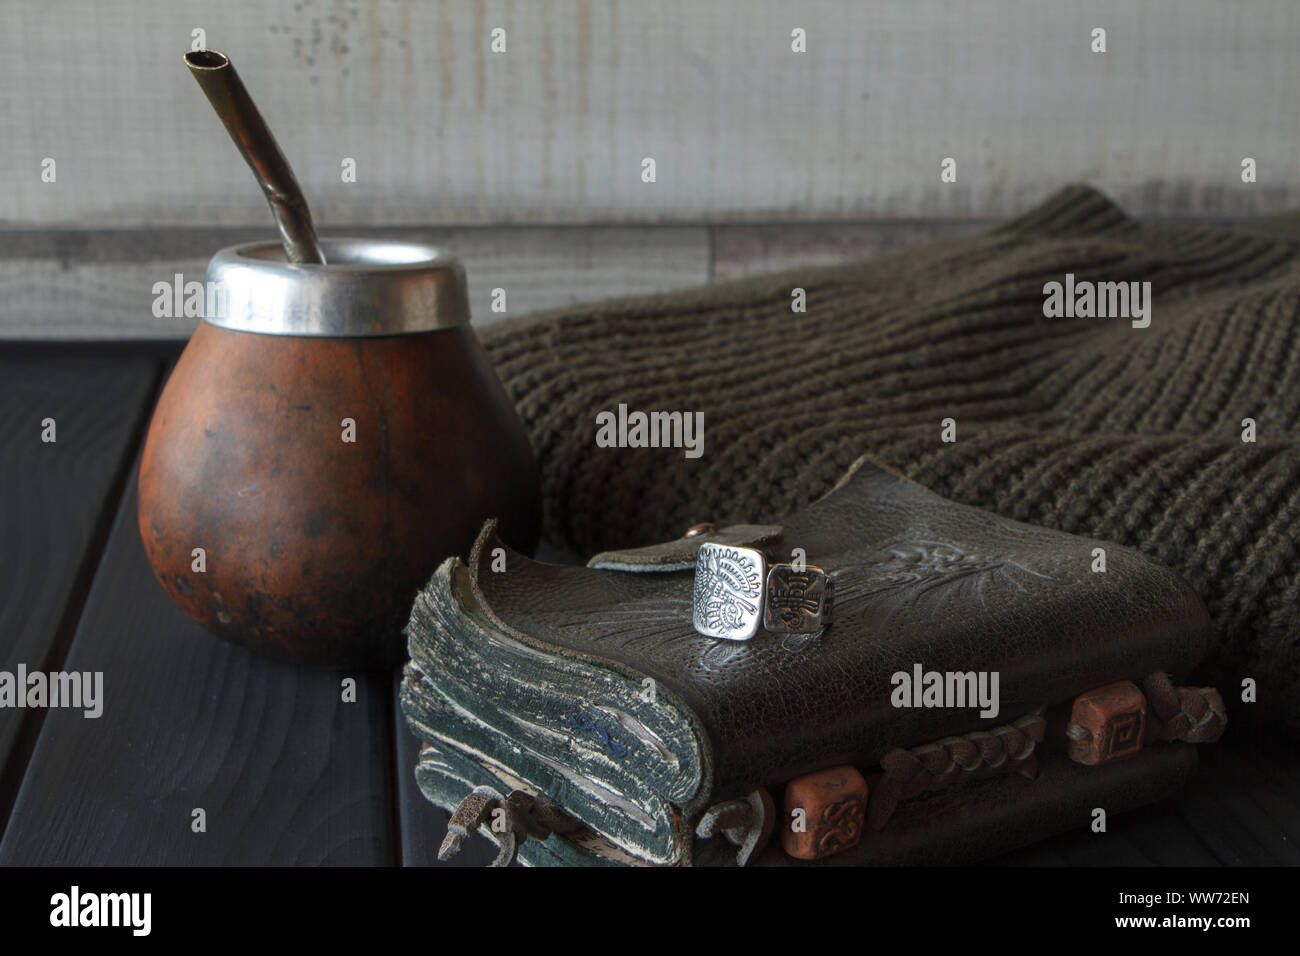 La vie toujours la main de la yerba mate artisanale cuir Gourd Calabash thé avec de la paille, le cuir ordinateur portable, chandail et joint torique sur le tableau peint en noir, séle Banque D'Images